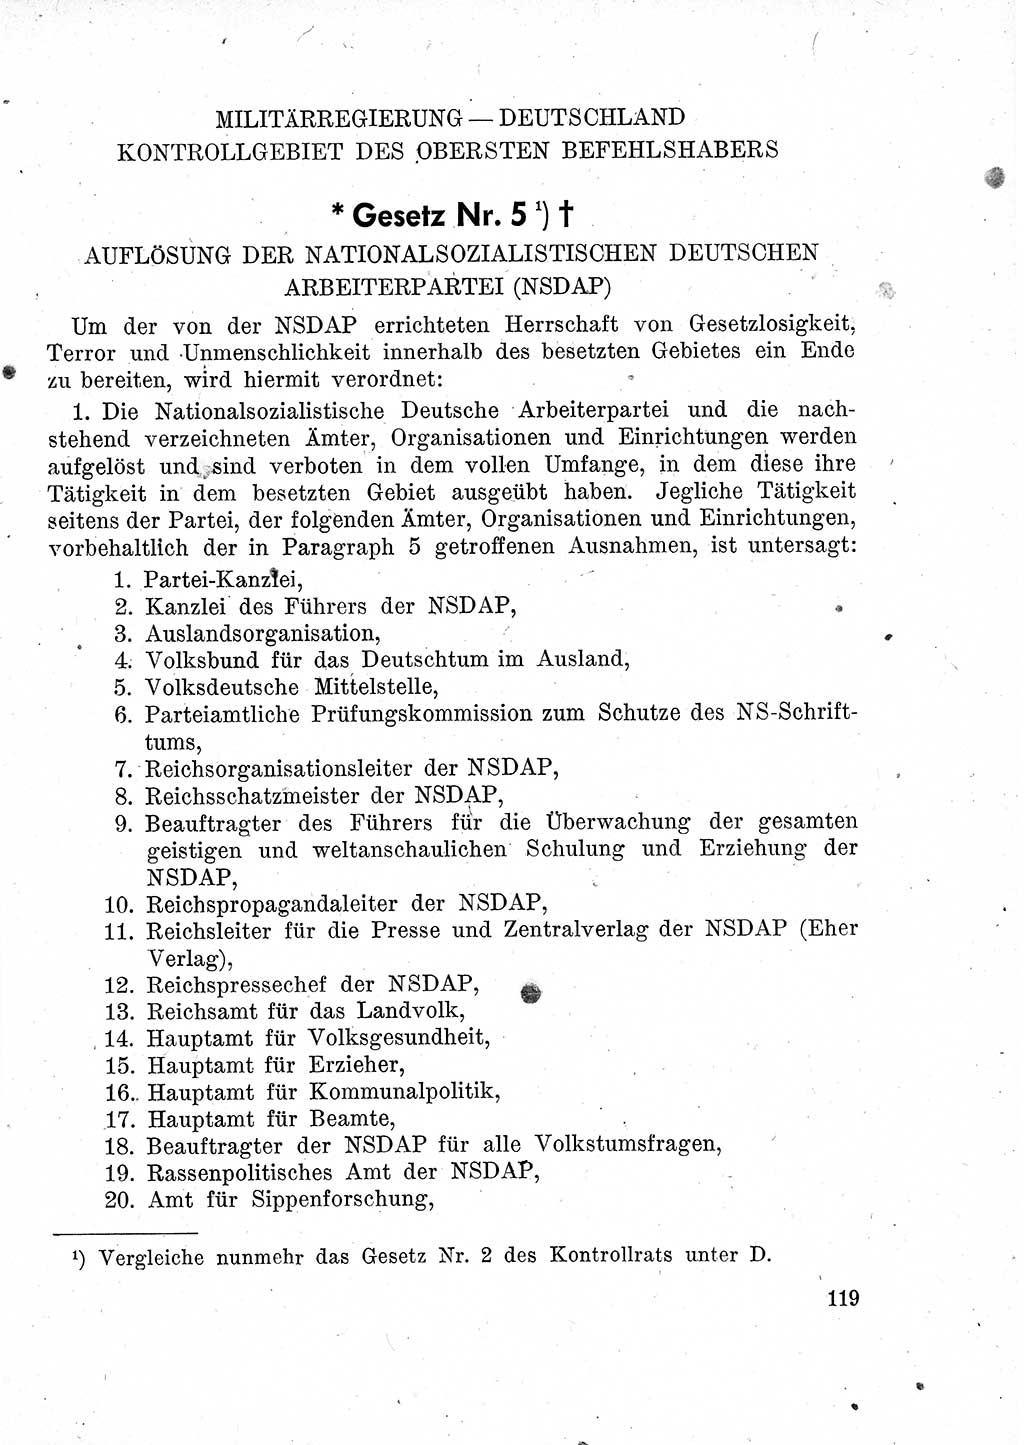 Das Recht der Besatzungsmacht (Deutschland), Proklamationen, Deklerationen, Verordnungen, Gesetze und Bekanntmachungen 1947, Seite 119 (R. Bes. Dtl. 1947, S. 119)